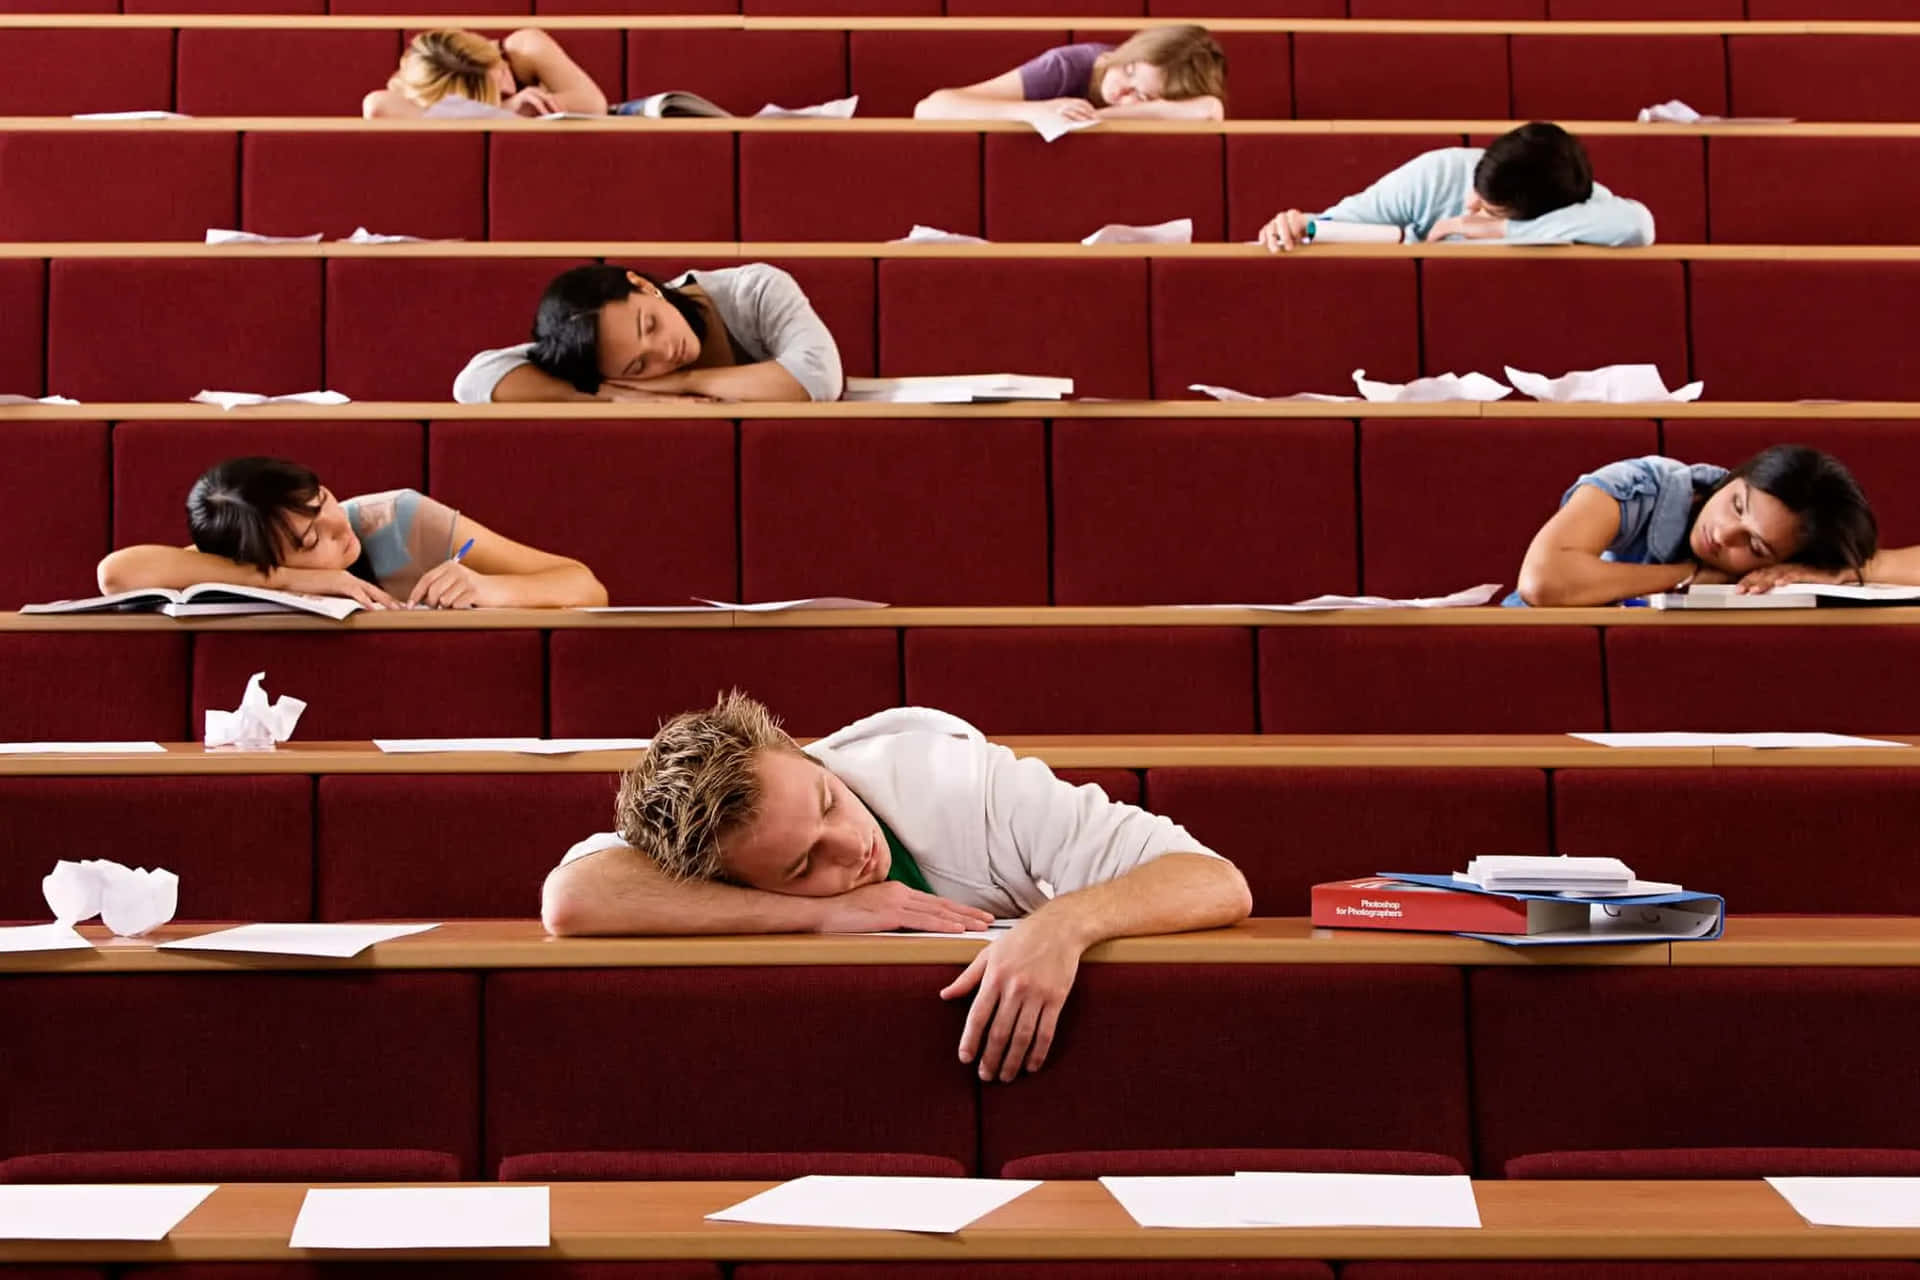 Ungruppo Di Persone Che Dormono In Un'aula Di Lezione